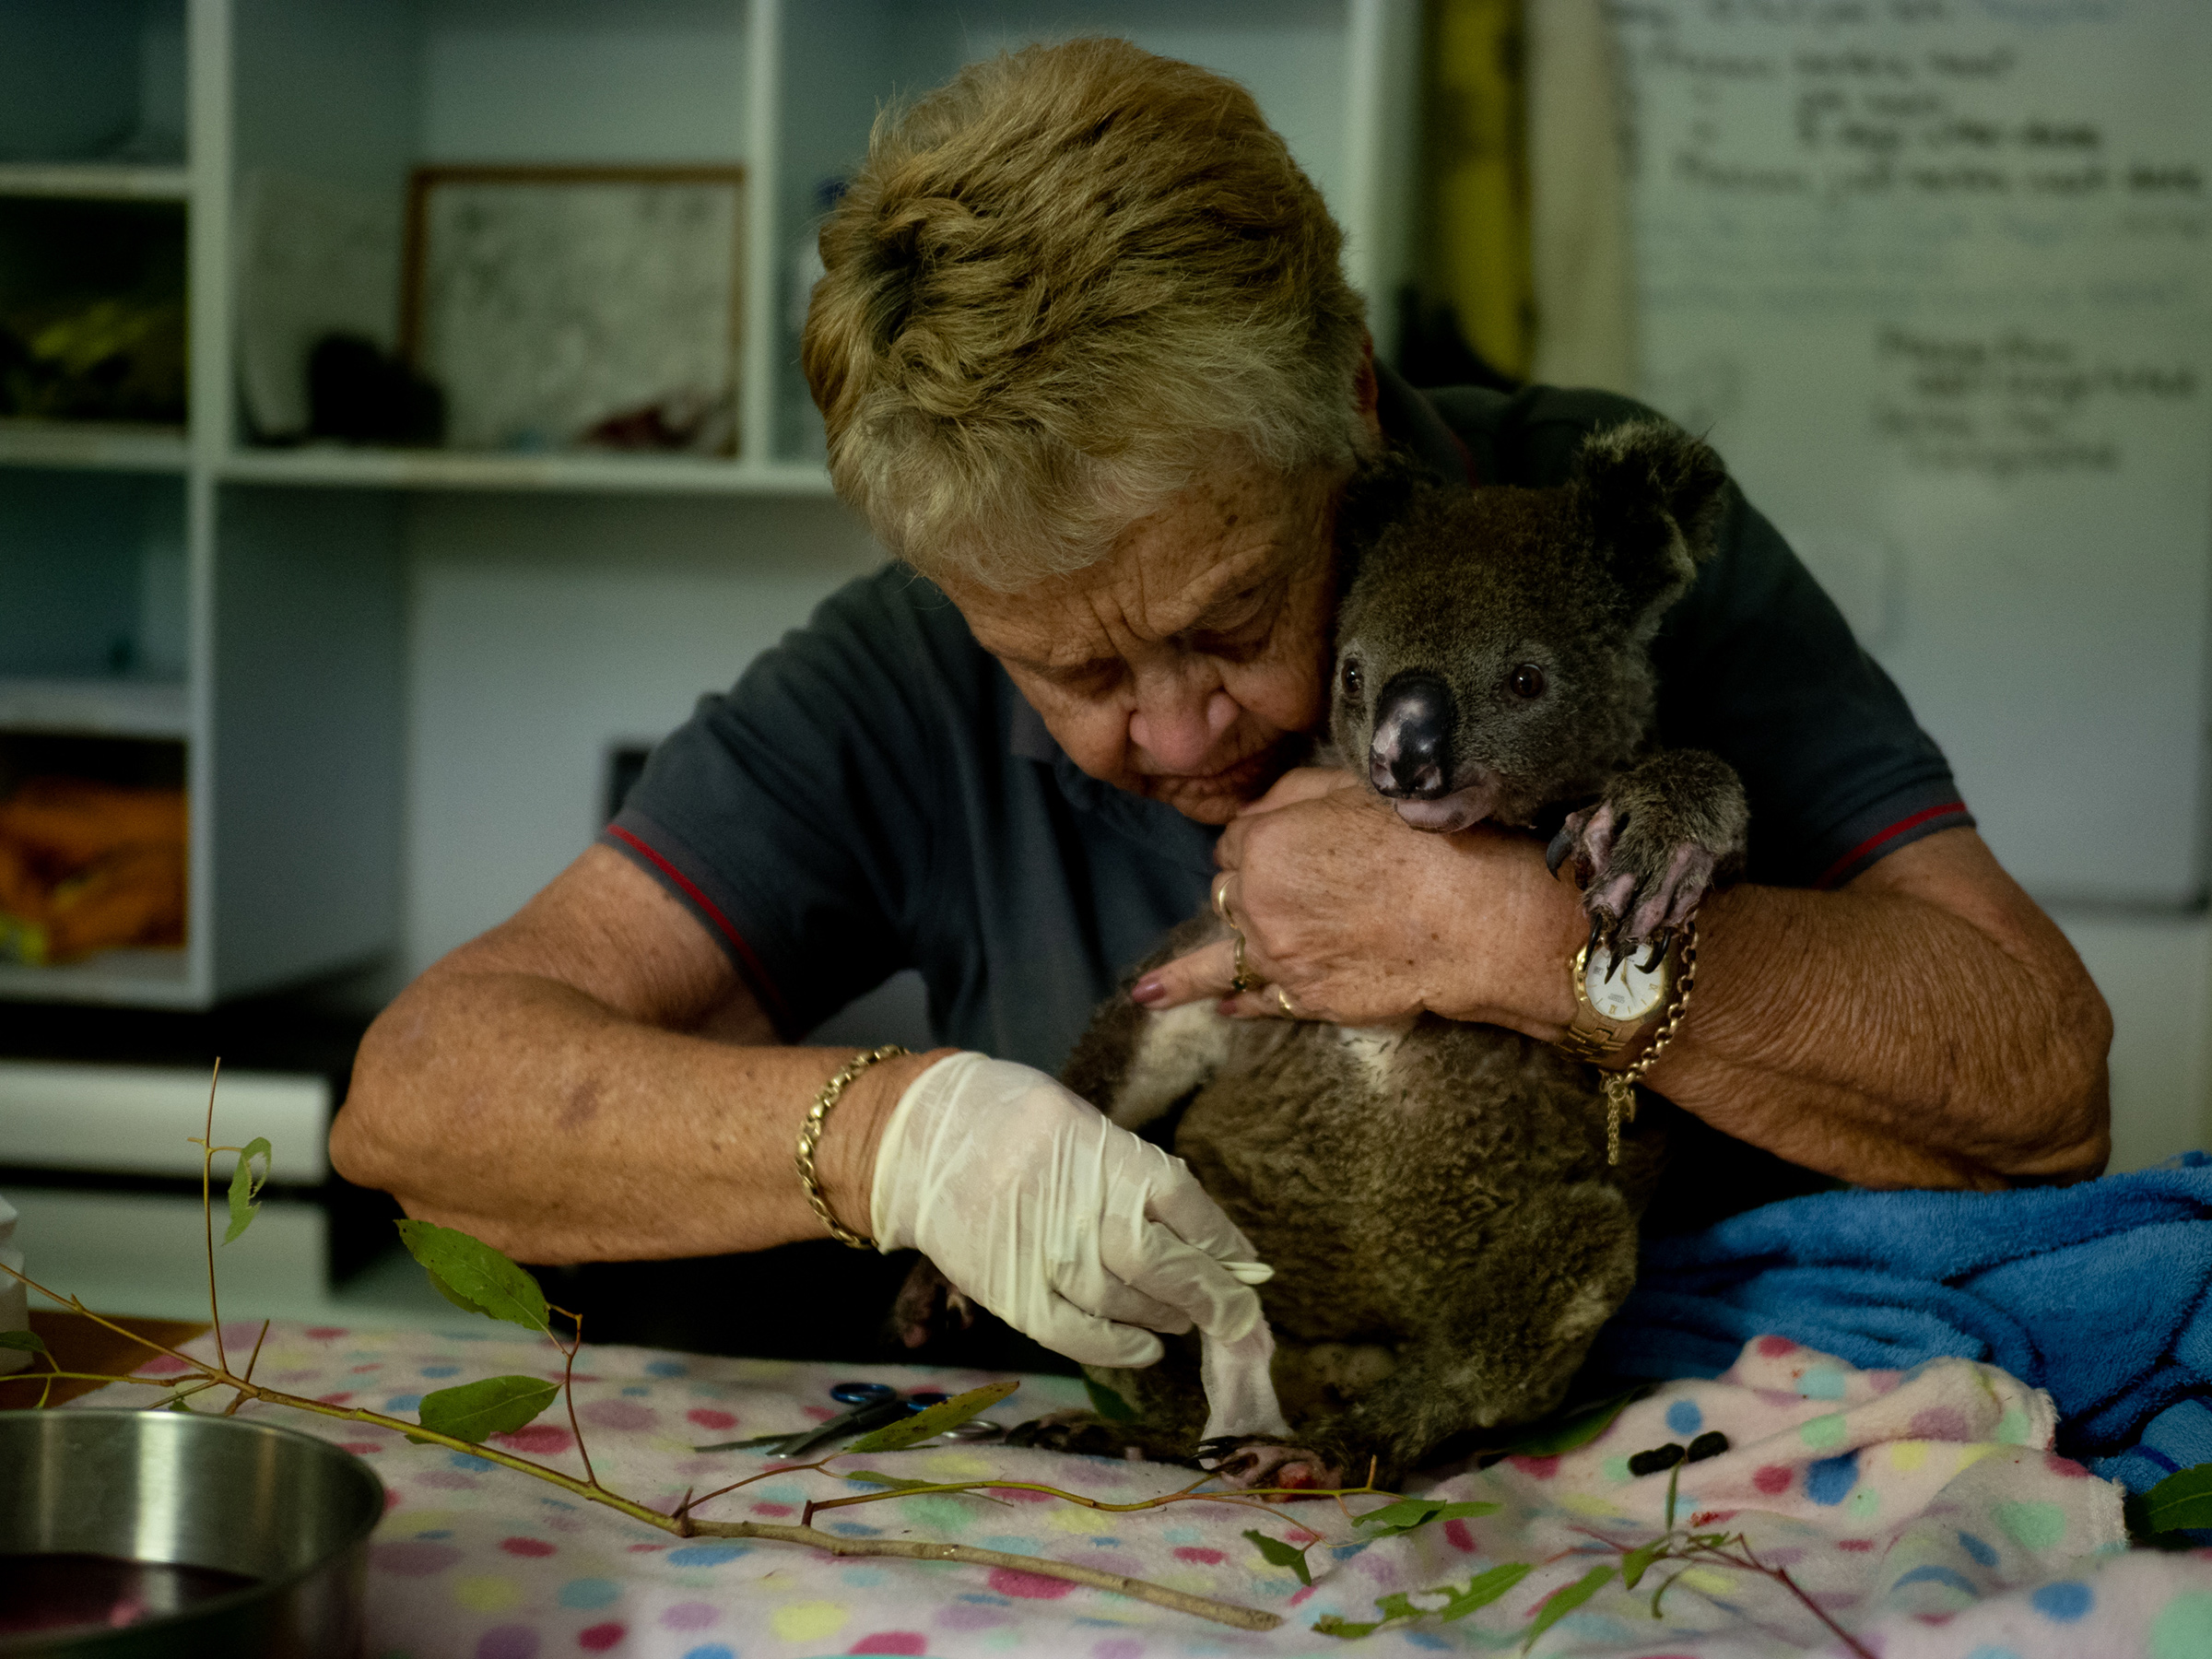 Port Macquarie Koala Hospital volunteer Barbara Barrett treats a bushfire survivor, Baz, on Dec. 6, 2019. (Michaela Skovranova)